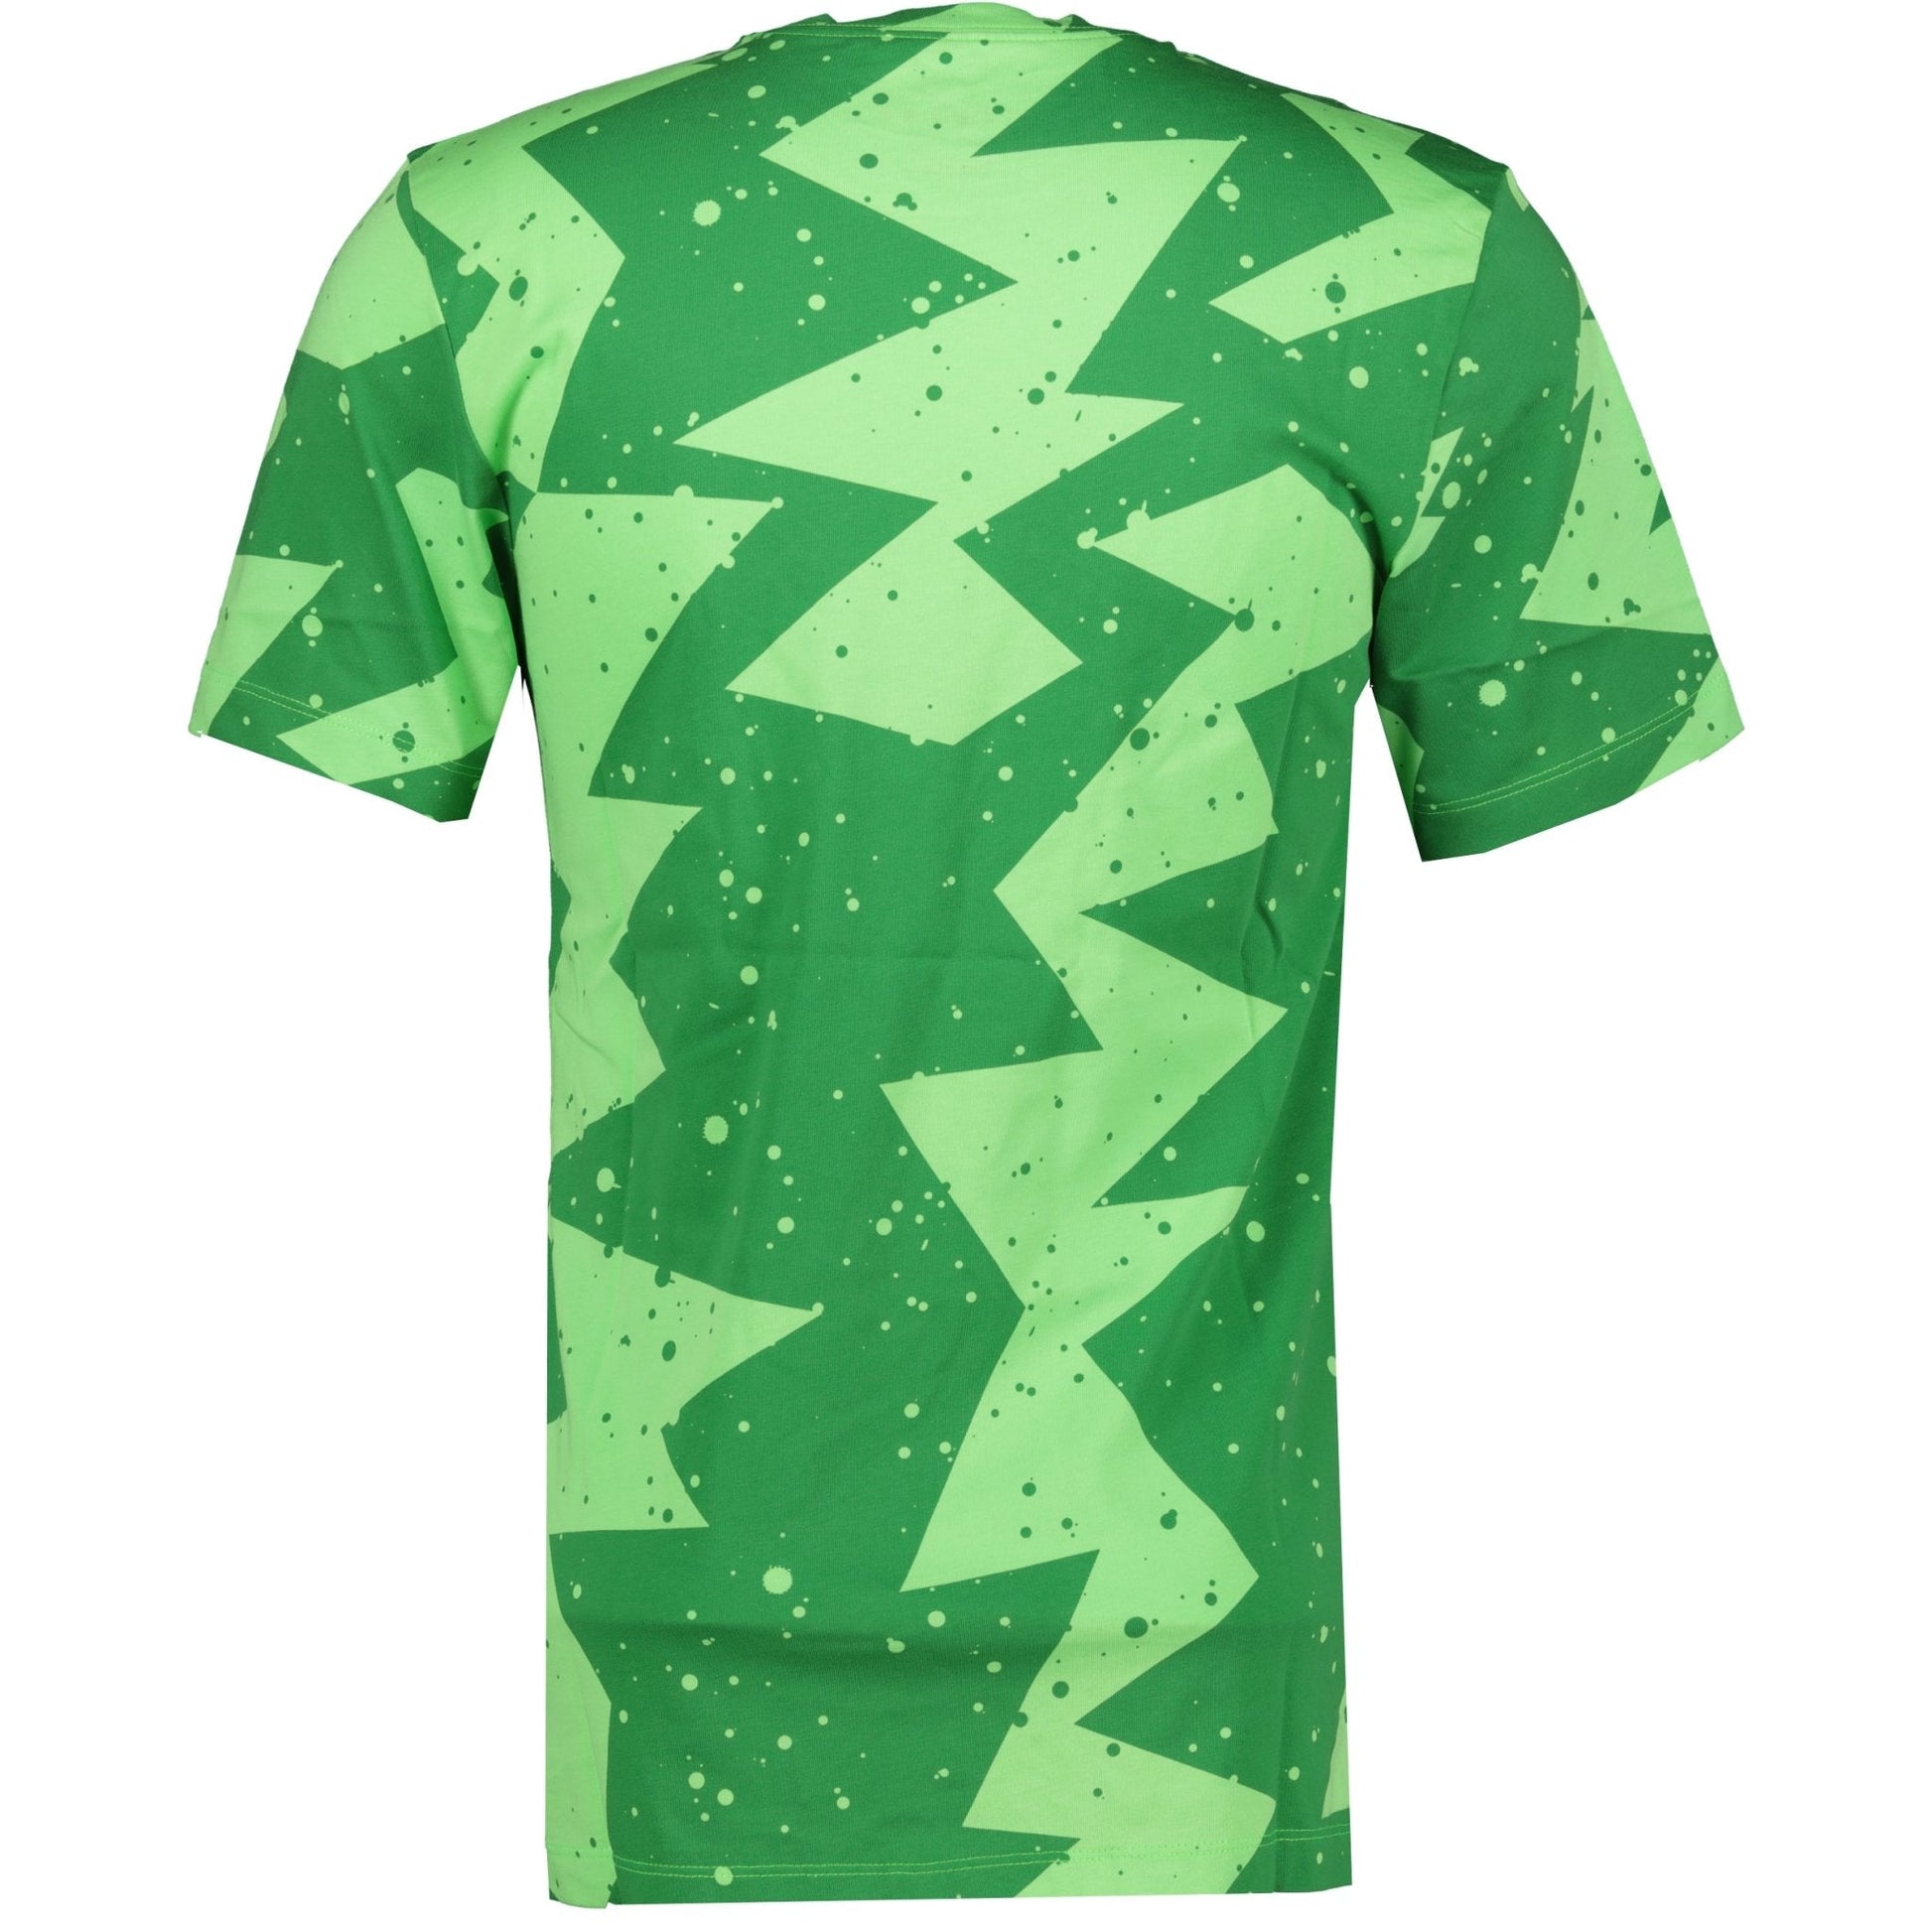 Nike Air Jordan Poolside T-Shirt Green - LinkFashionco